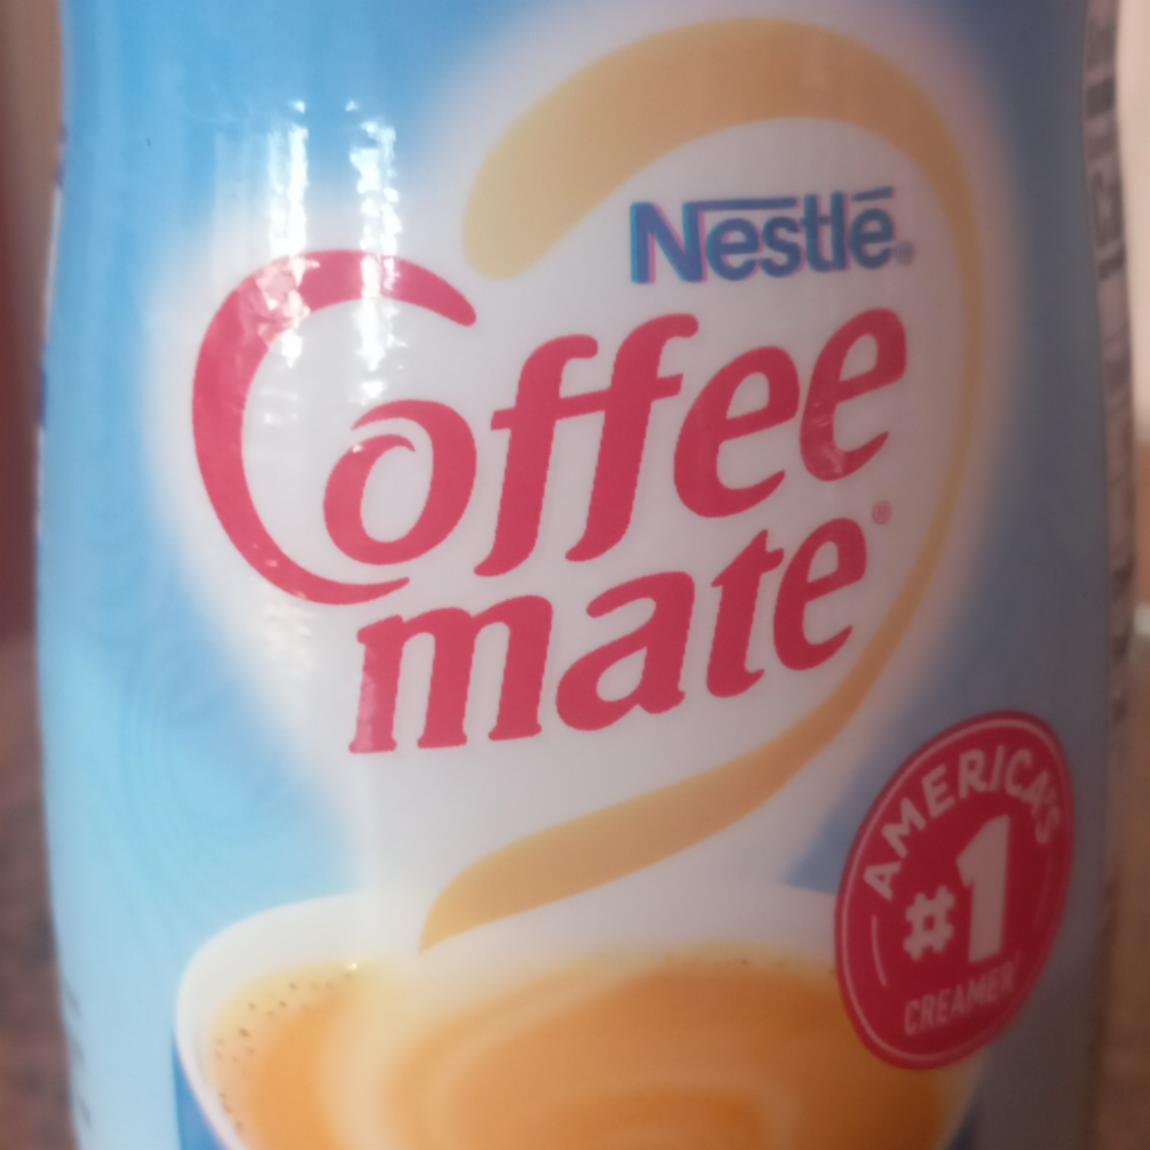 Fotografie - Coffee mate Nestlé